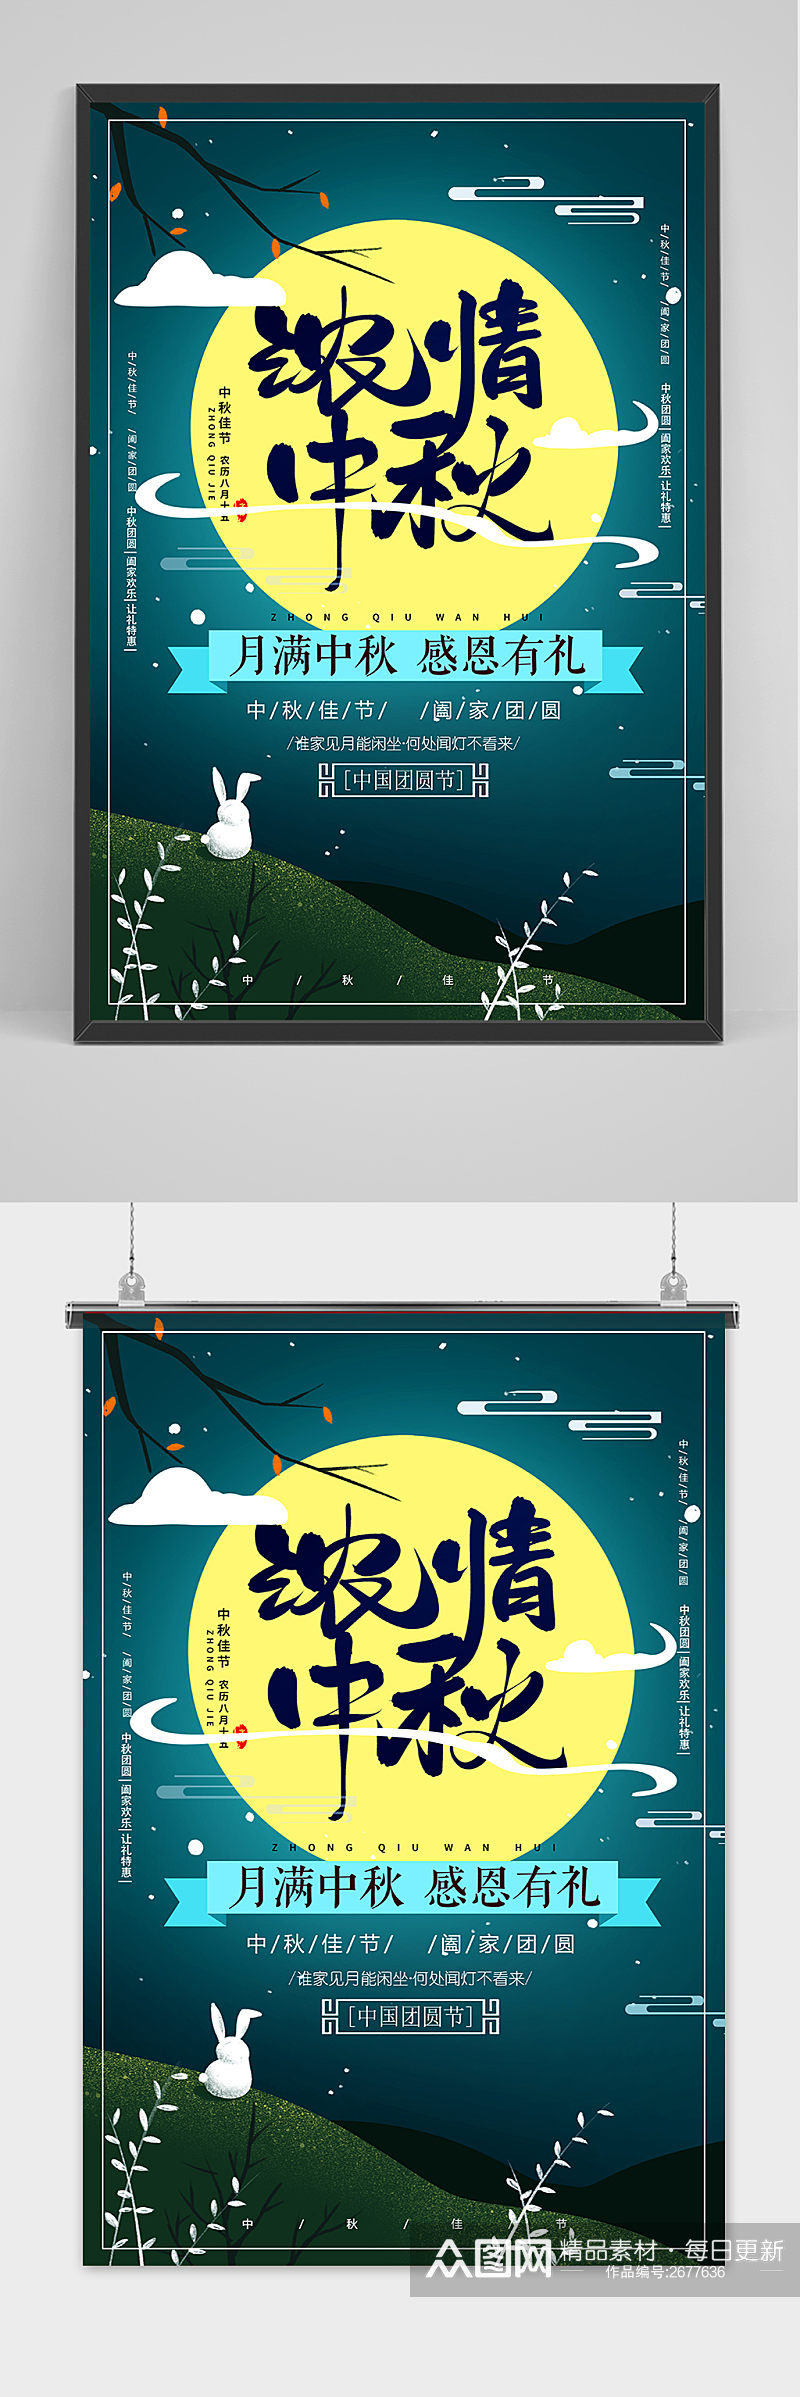 创意传统中国风浓情中秋节海报素材